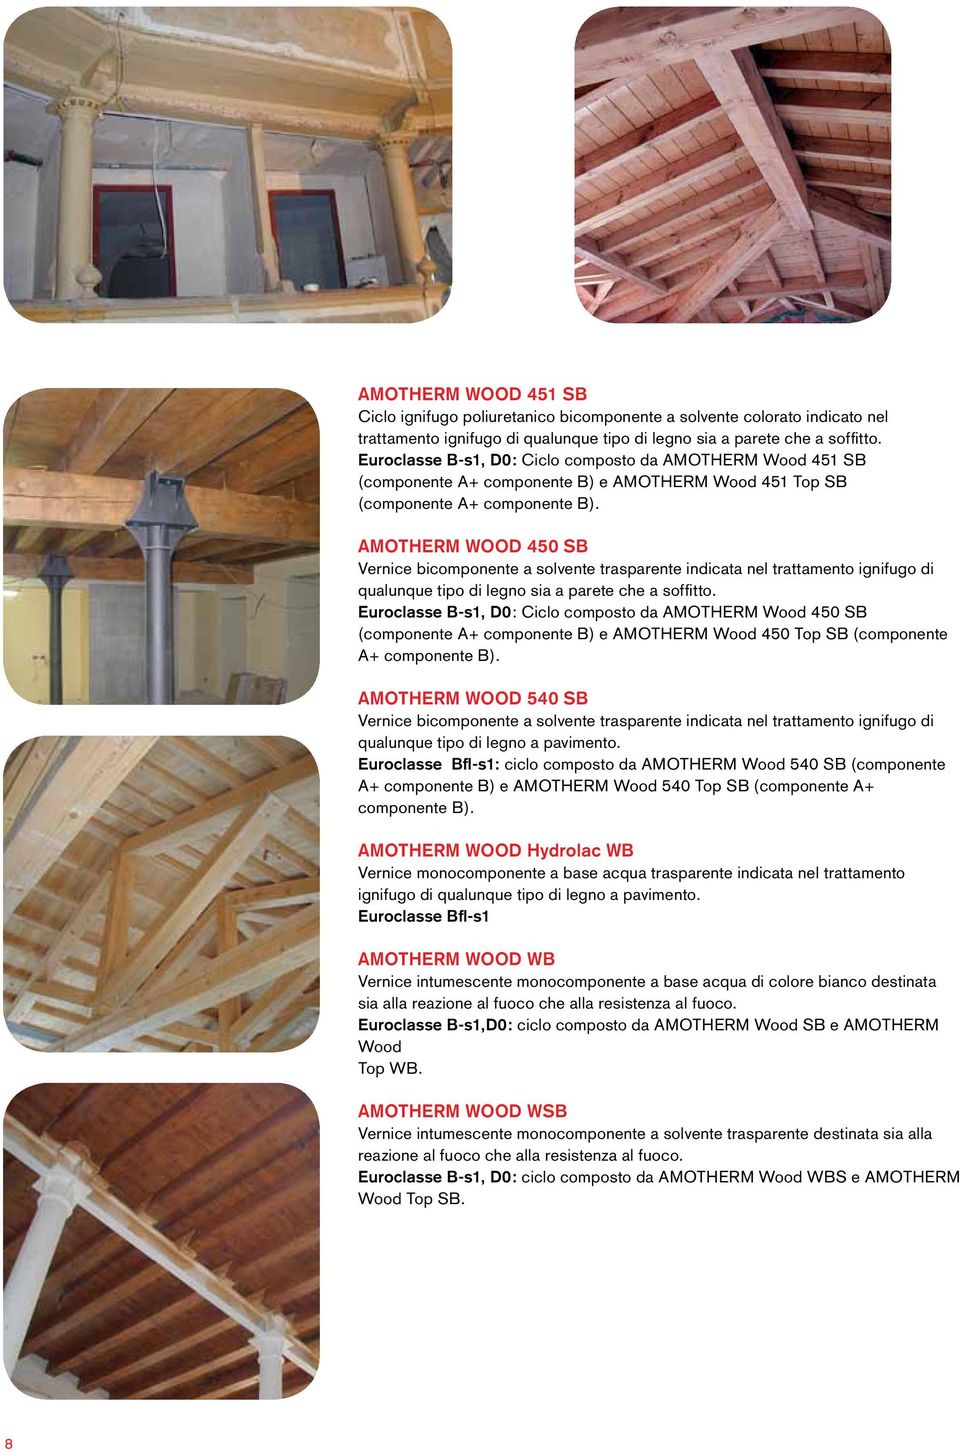 AMOTHERM Wood 450 Vernice bicomponente a solvente trasparente indicata nel trattamento ignifugo di qualunque tipo di legno sia a parete che a soffitto.